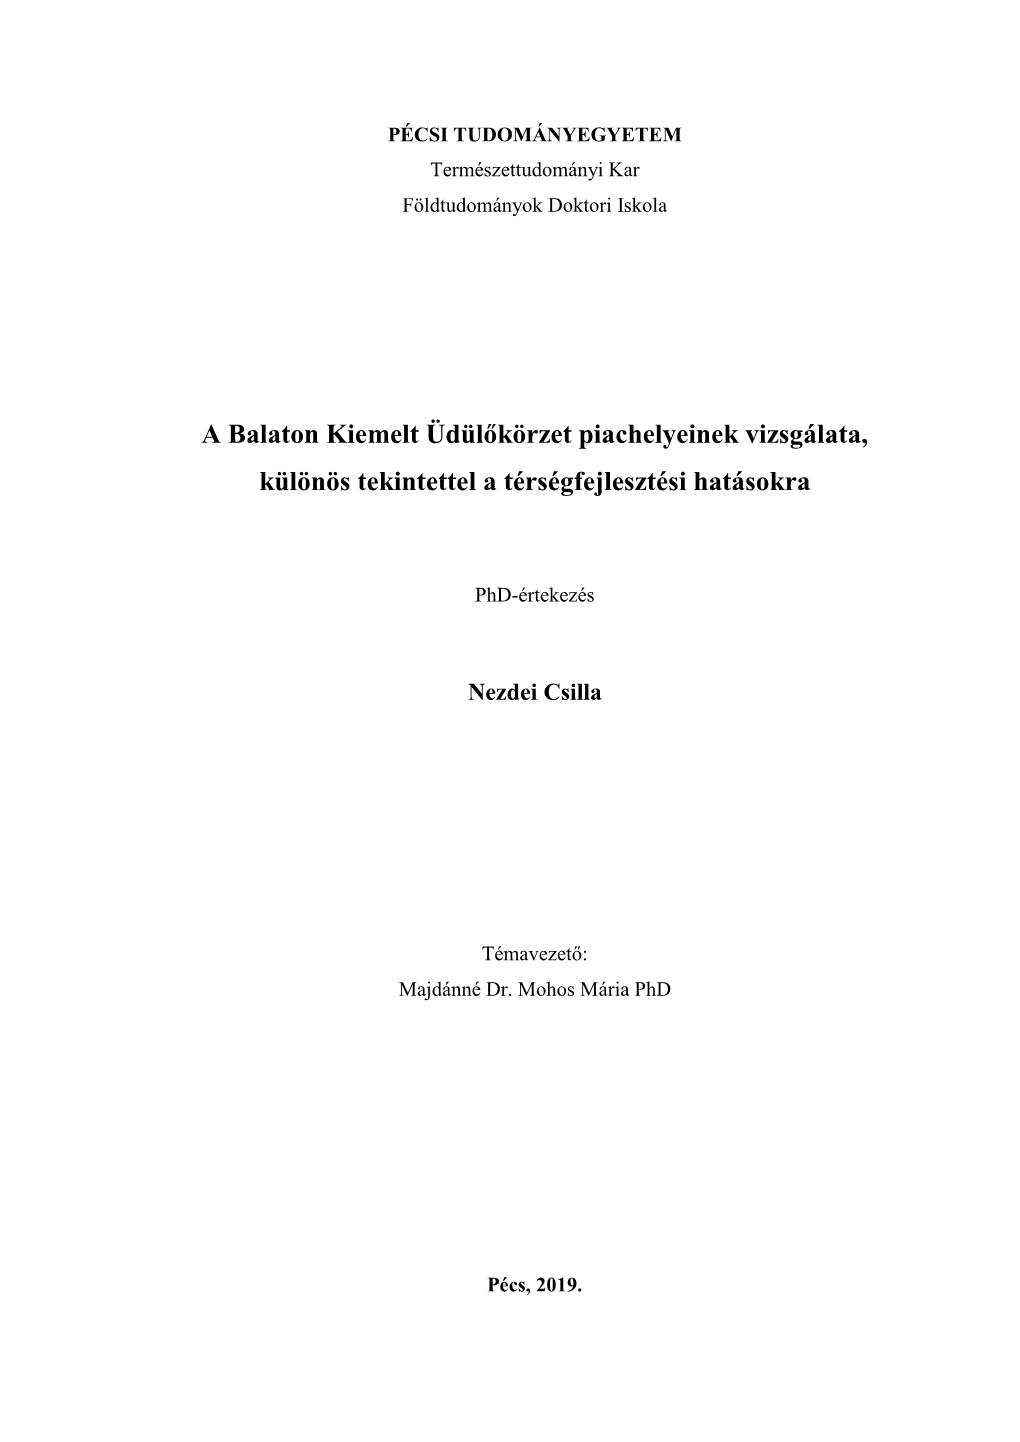 A Balaton Kiemelt Üdülőkörzet Piachelyeinek Vizsgálata, Különös Tekintettel a Térségfejlesztési Hatásokra